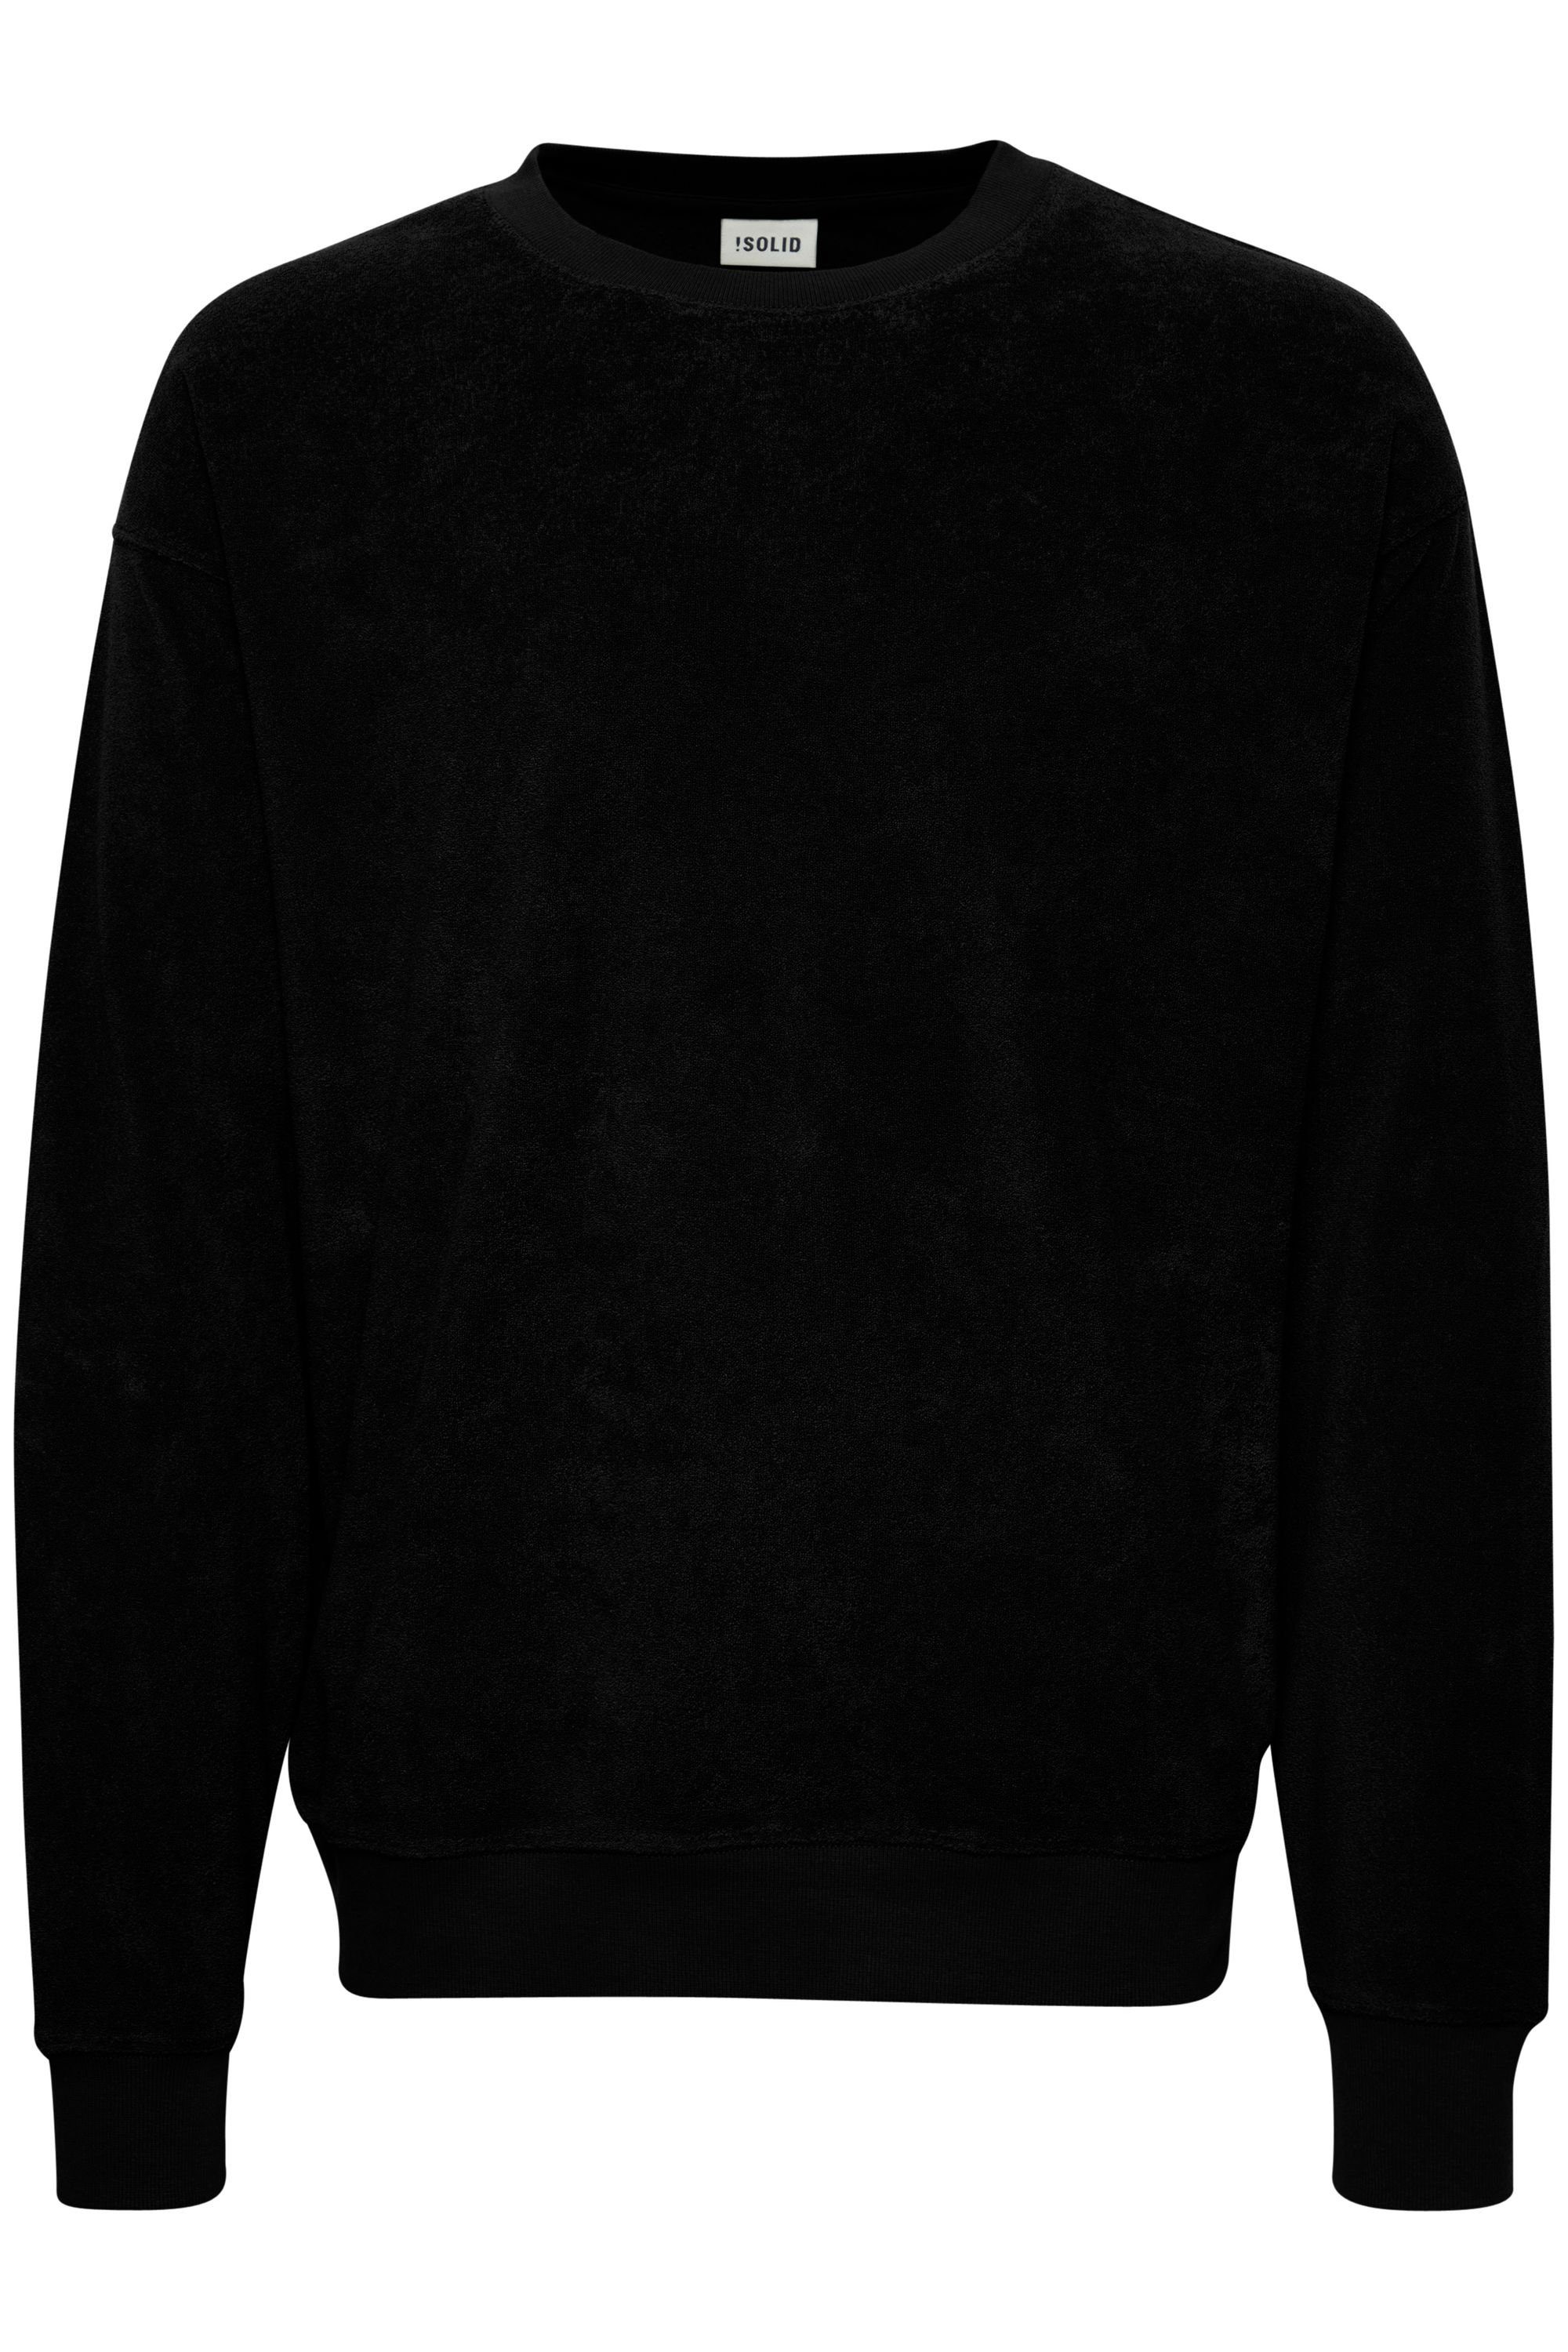 !Solid (194008) SDHaarvard Black True Sweatshirt